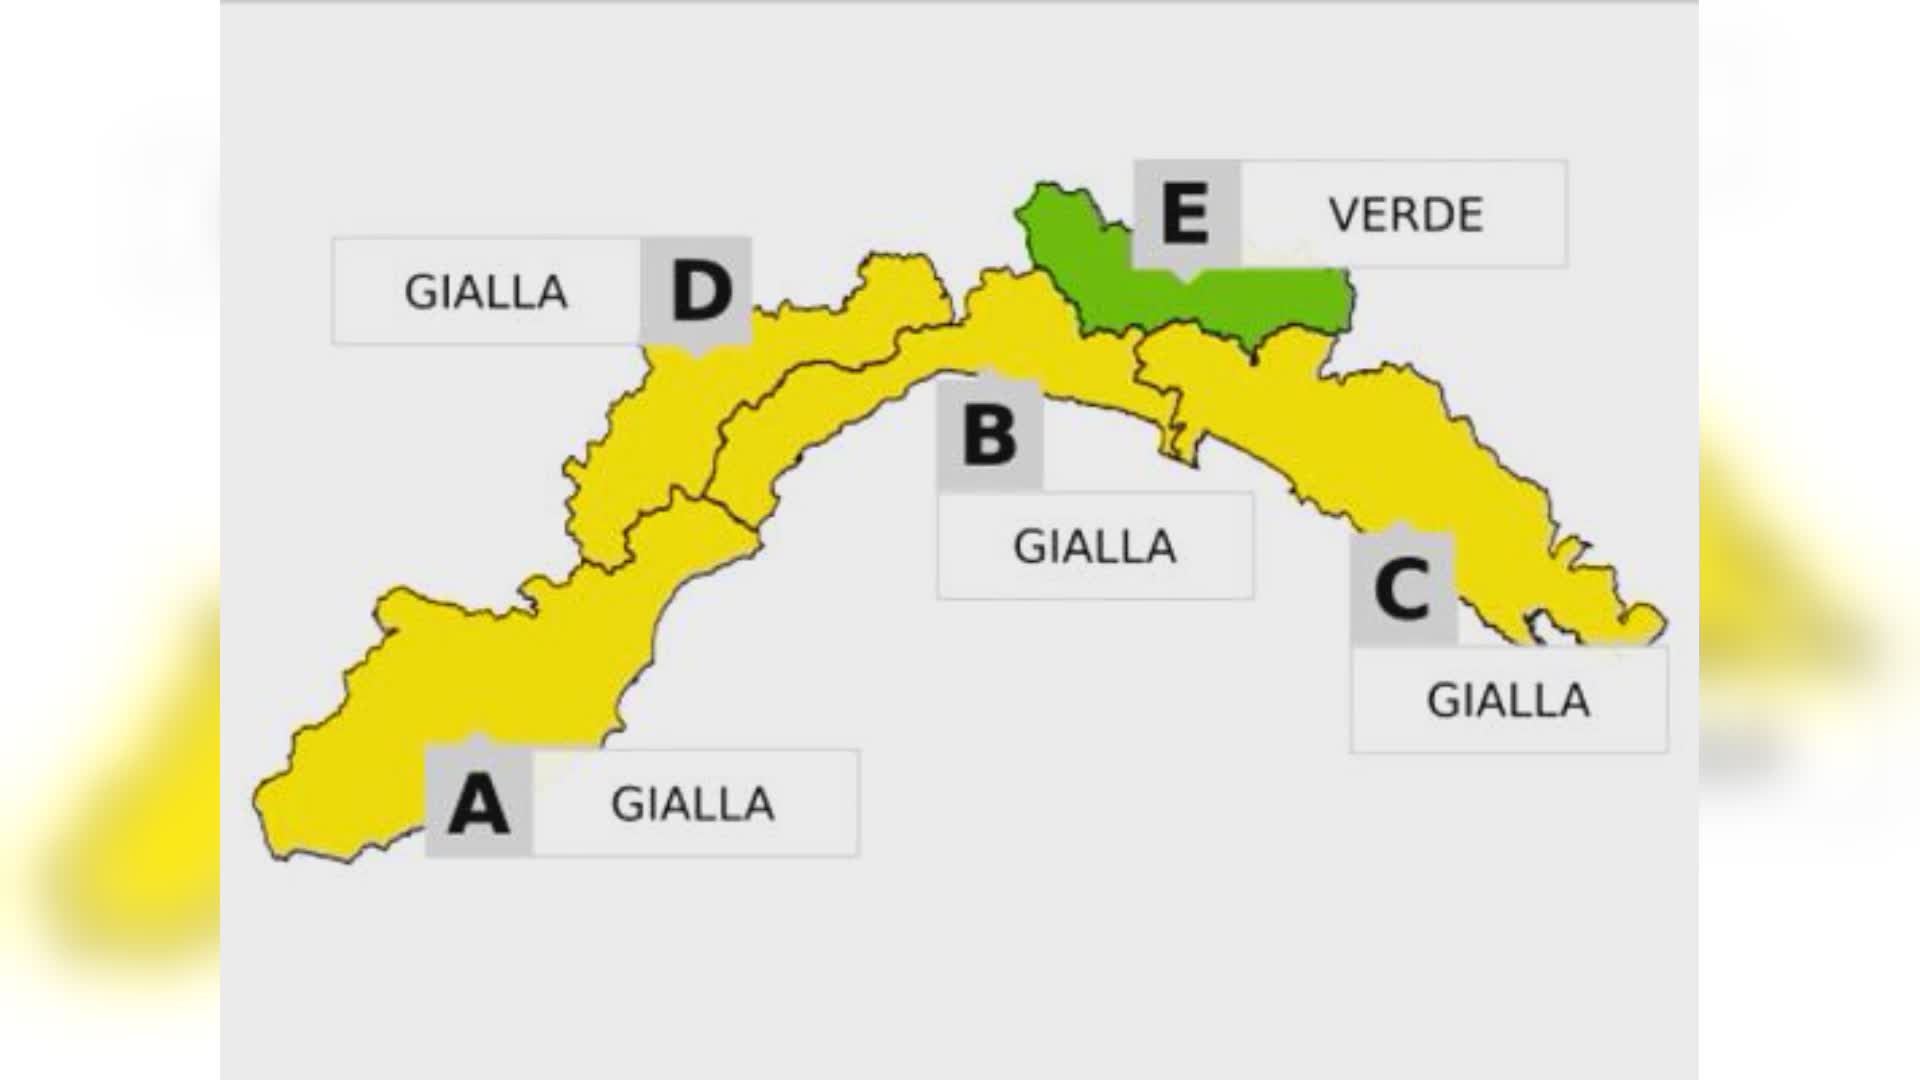 Maltempo in Liguria, Arpal prolunga l'allerta gialla fino a mezzanotte per temporali e piogge diffuse